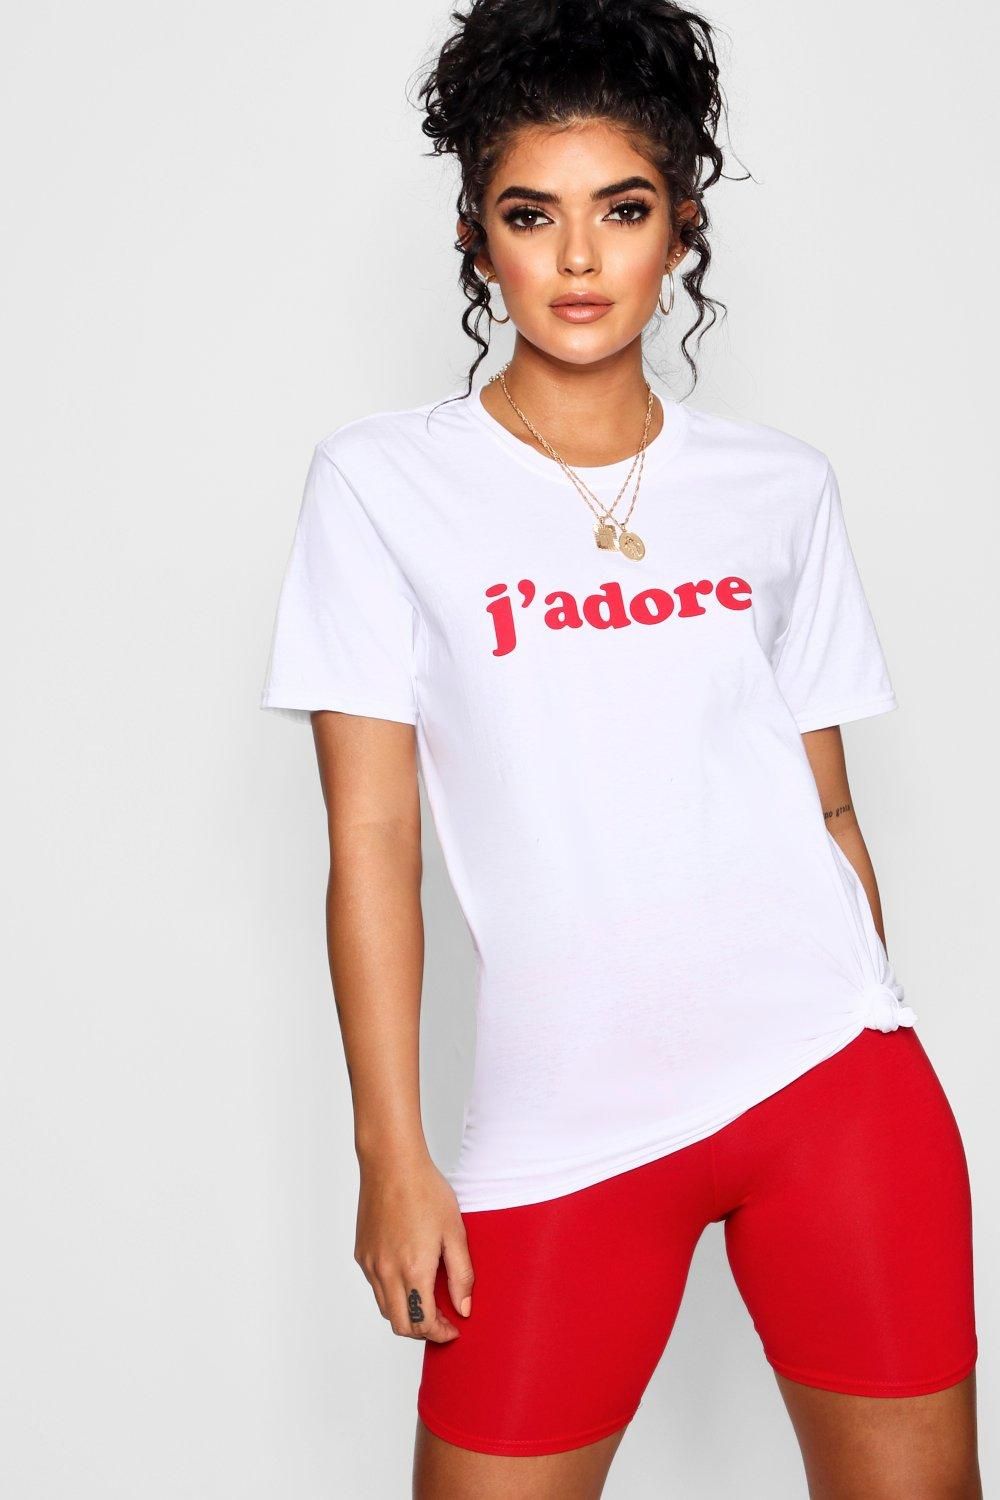 Danielle J'adore Slogan T-Shirt | Boohoo.com (US & CA)